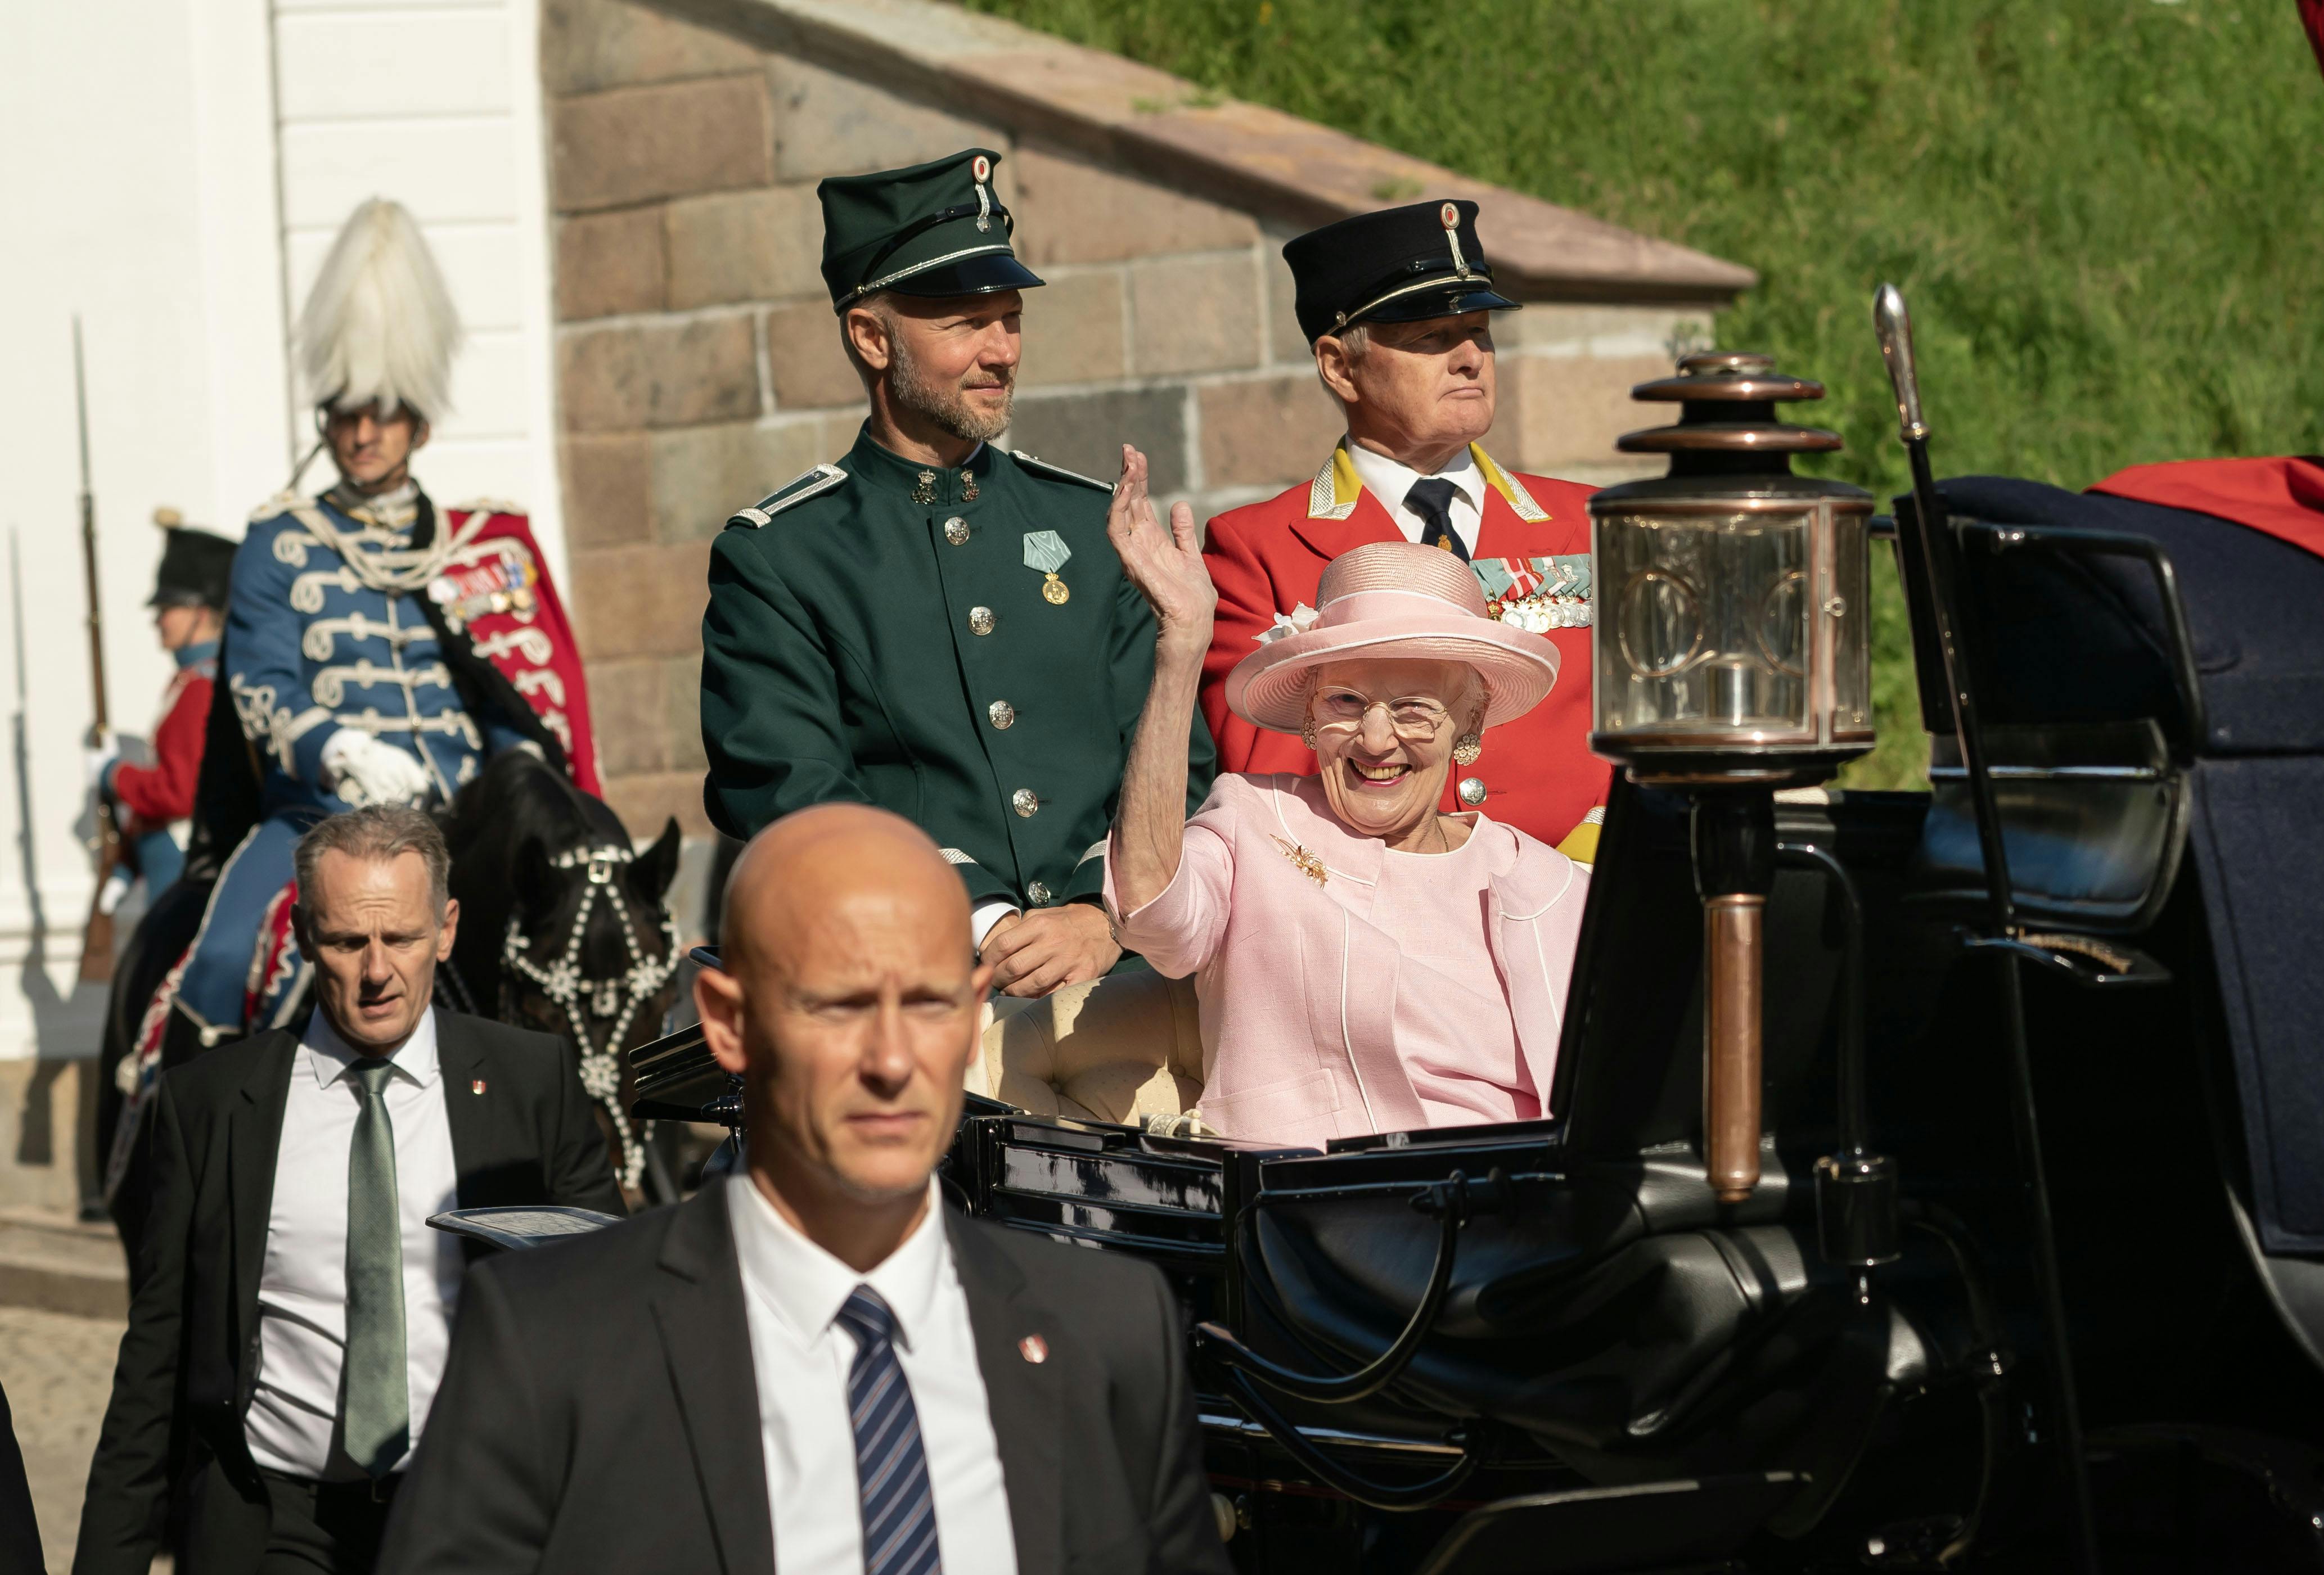 OPGAVE: Dronning Margrethe på sensommertogt i Fredericia. Her karetkørsel gennem byen og her foran statuen LandsoldatenSTED: FredericiaJOURNALIST: Ulrik UlriksenFOTOGRAF: Hanne JuulDATO: 20230831